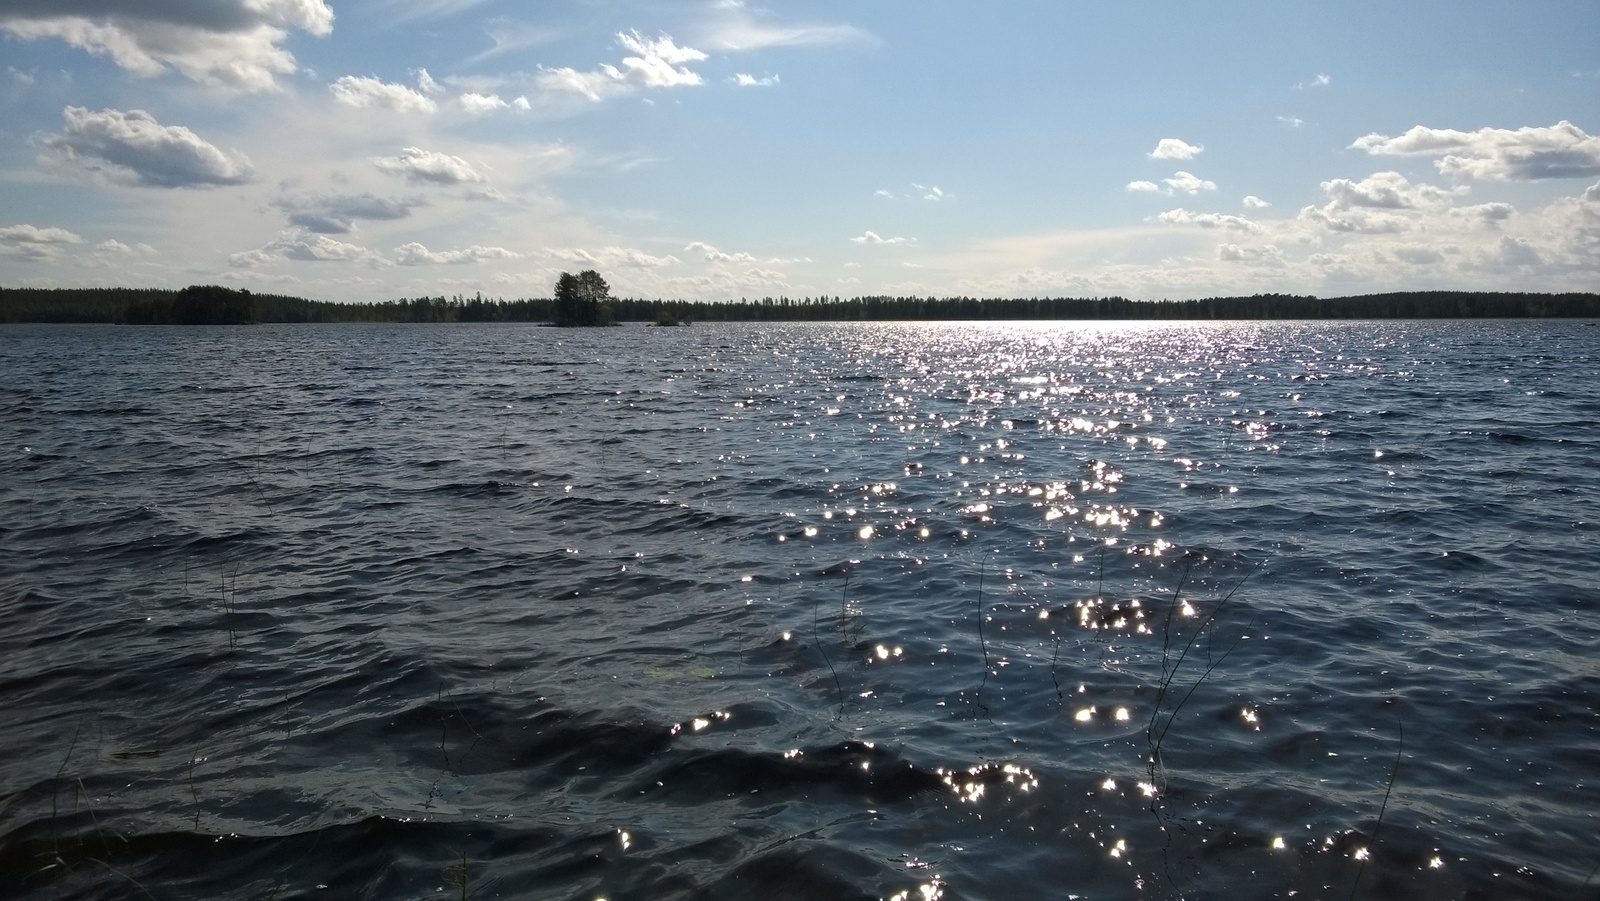 Kesäisessä järvimaisemassa laineileva veden pinta kimmeltää auringossa. Taivas on puolipilvinen.